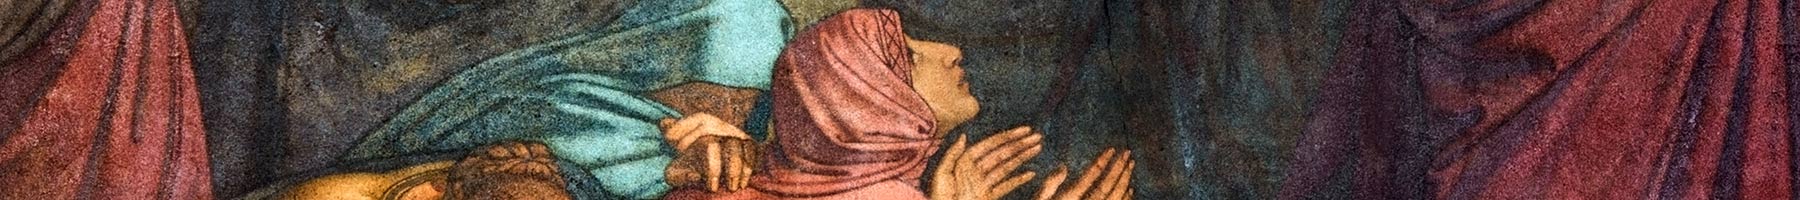 Jesus meets the women of Jerusalem, fresco